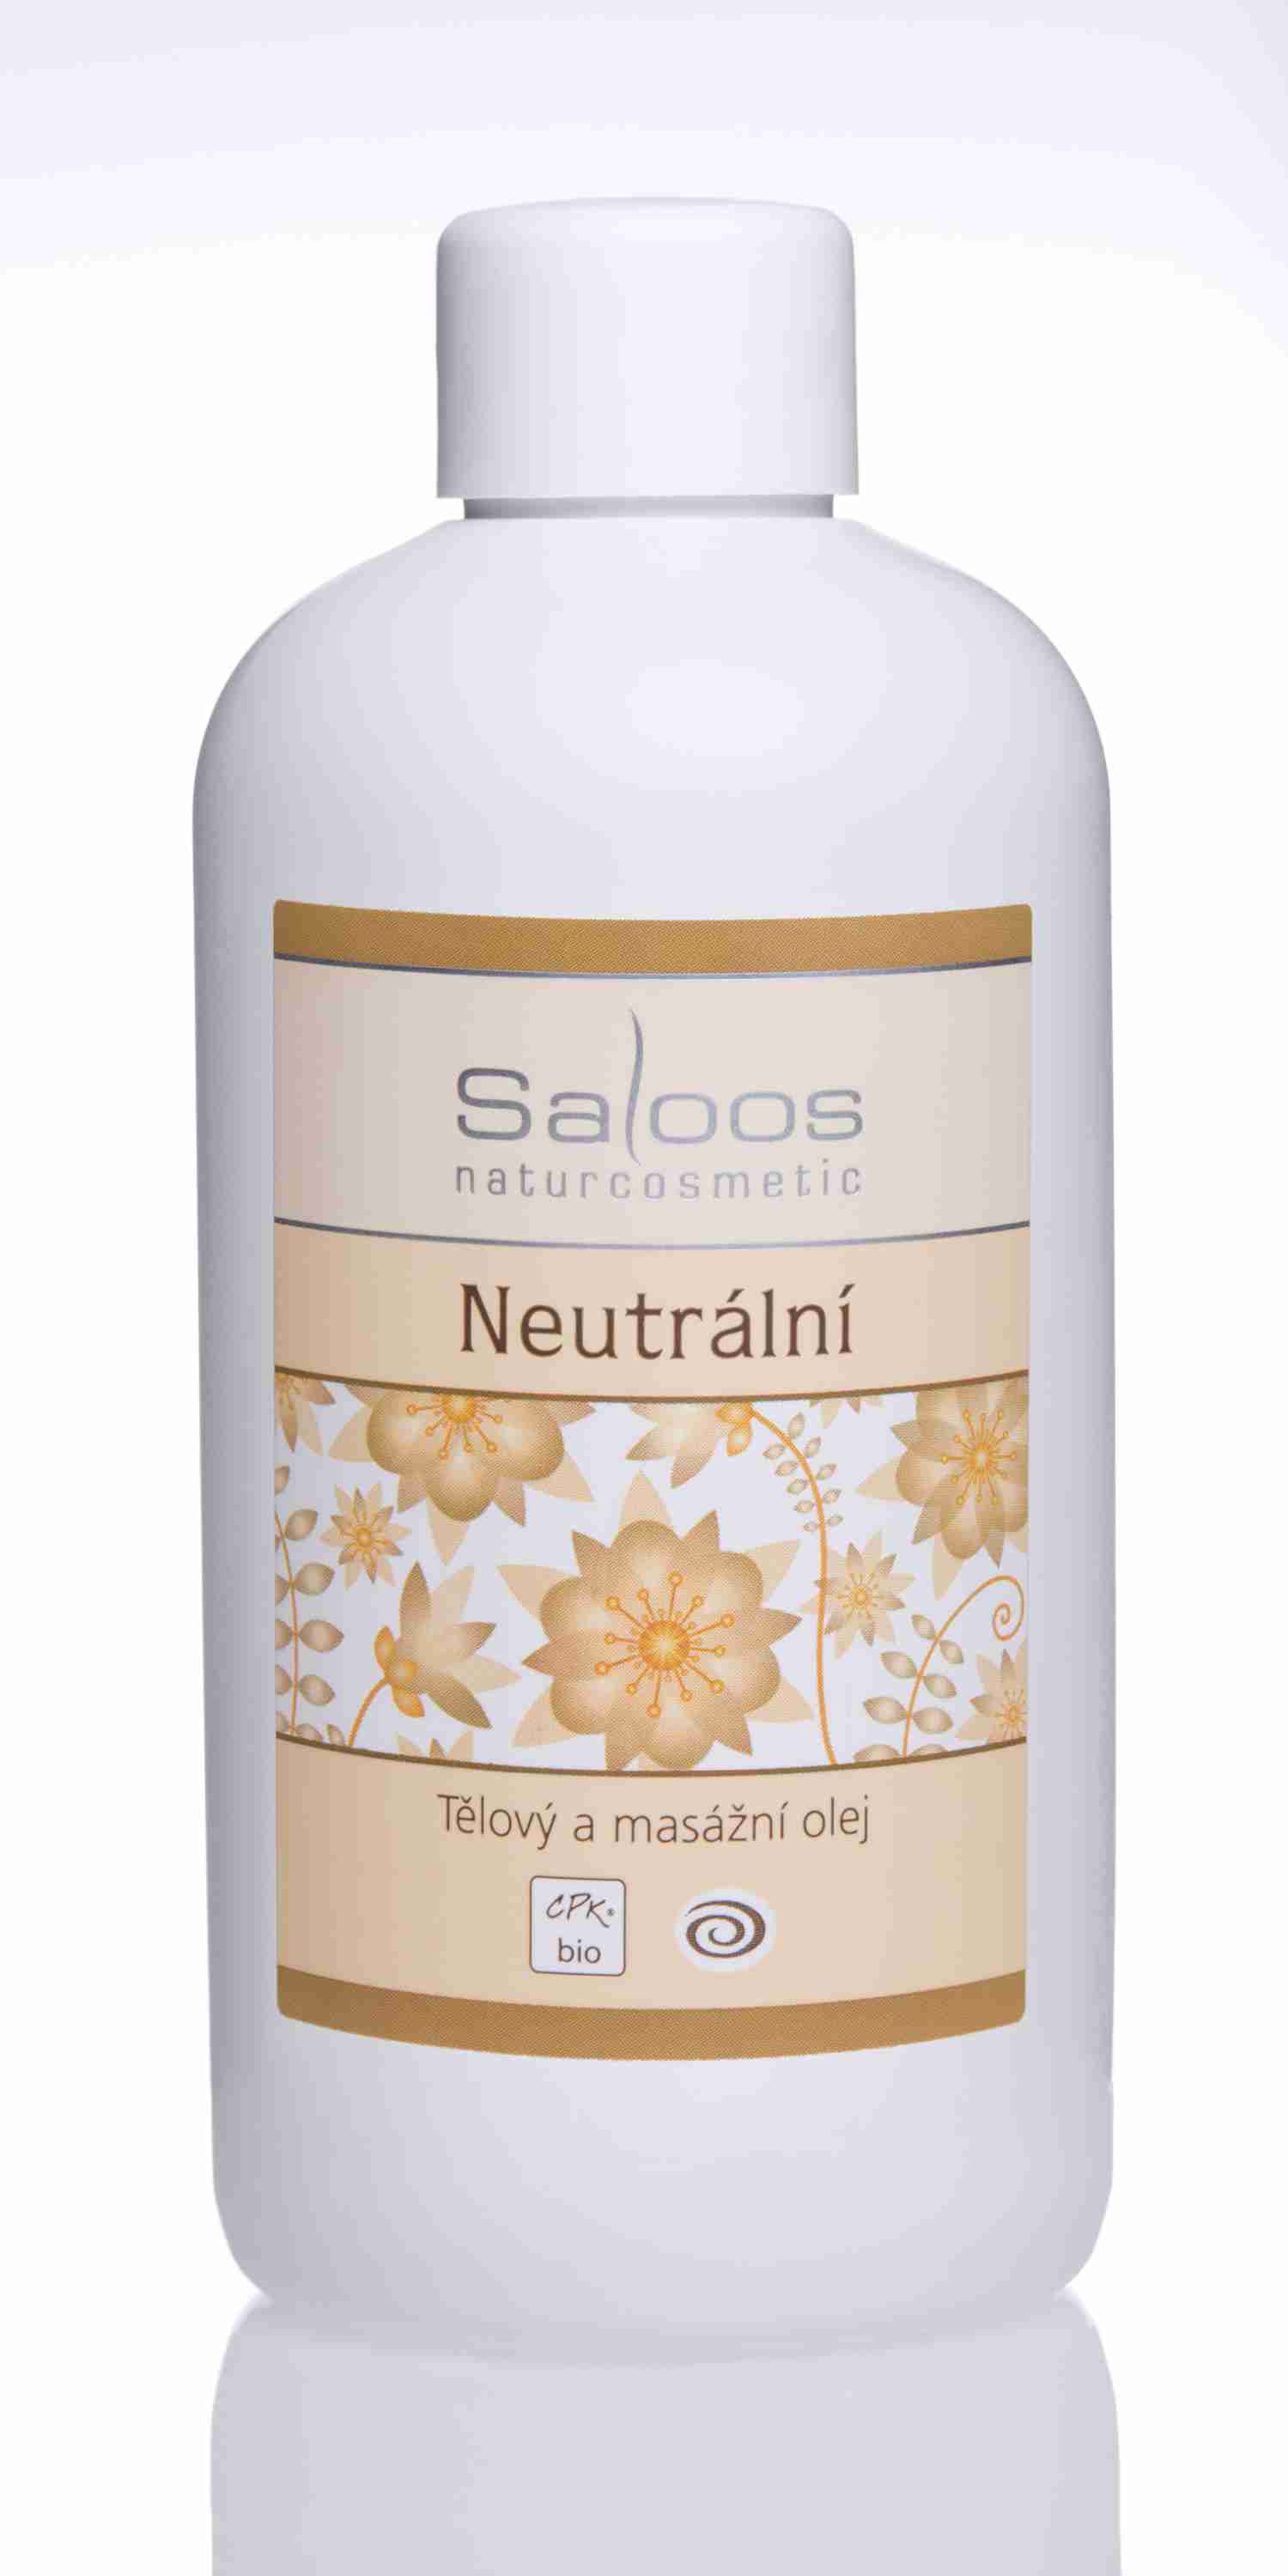 Saloos Bio Neutrální - tělový a masážní olej Balení: 250 ml